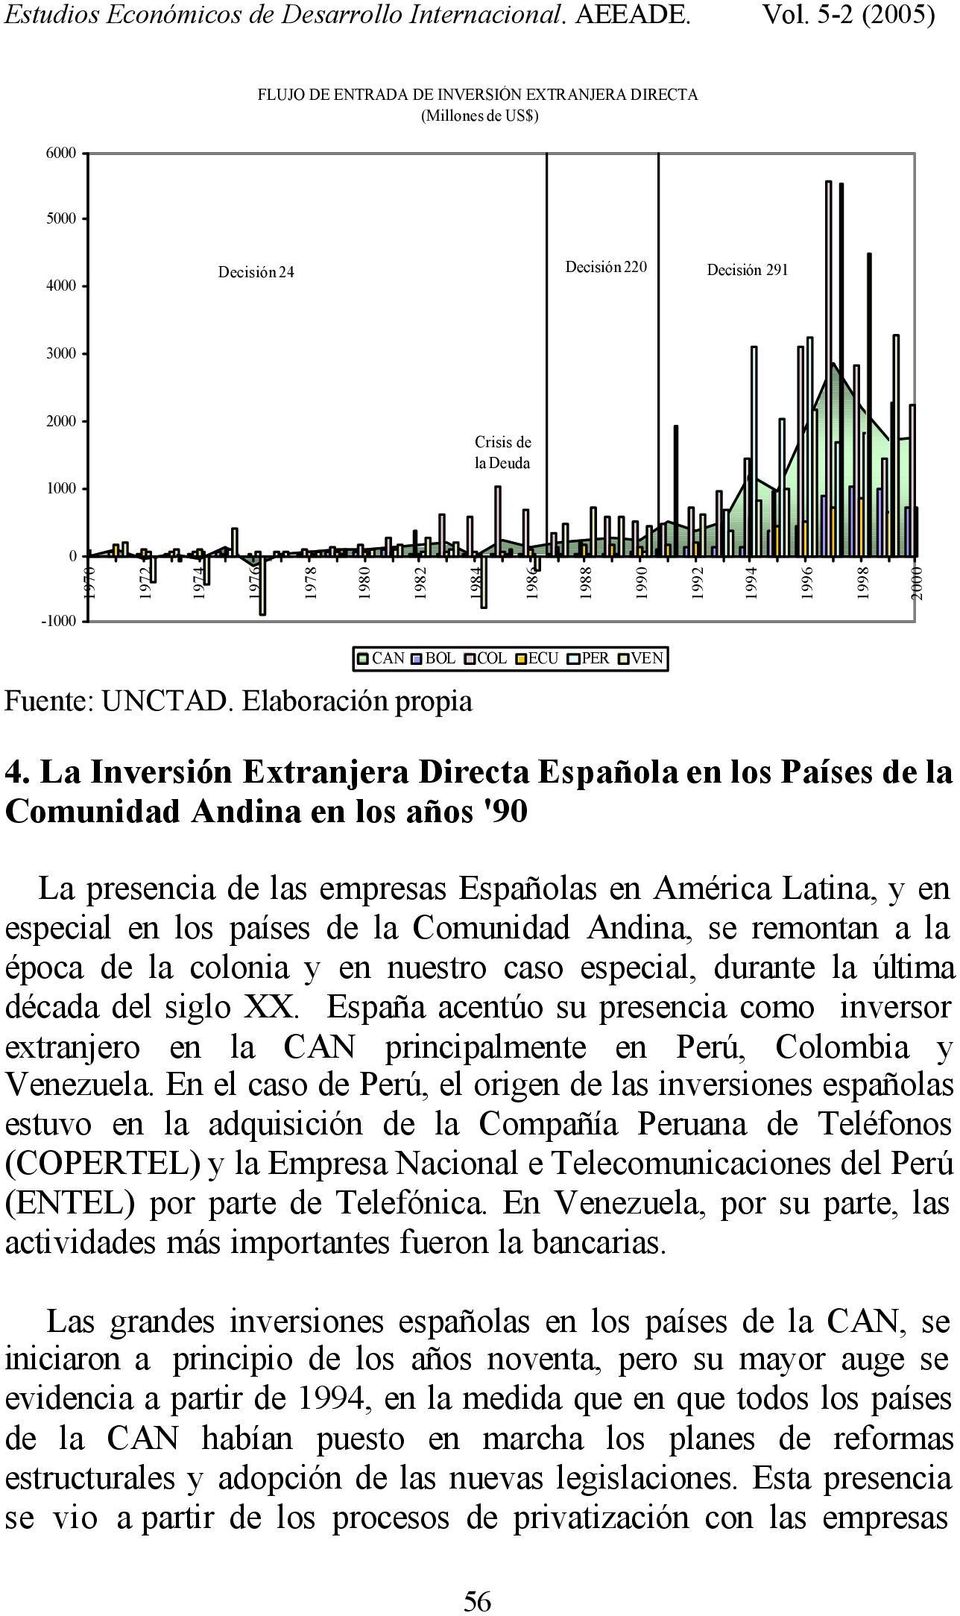 La Inversión Extranjera Directa Española en los Países de la Comunidad Andina en los años '90 La presencia de las empresas Españolas en América Latina, y en especial en los países de la Comunidad